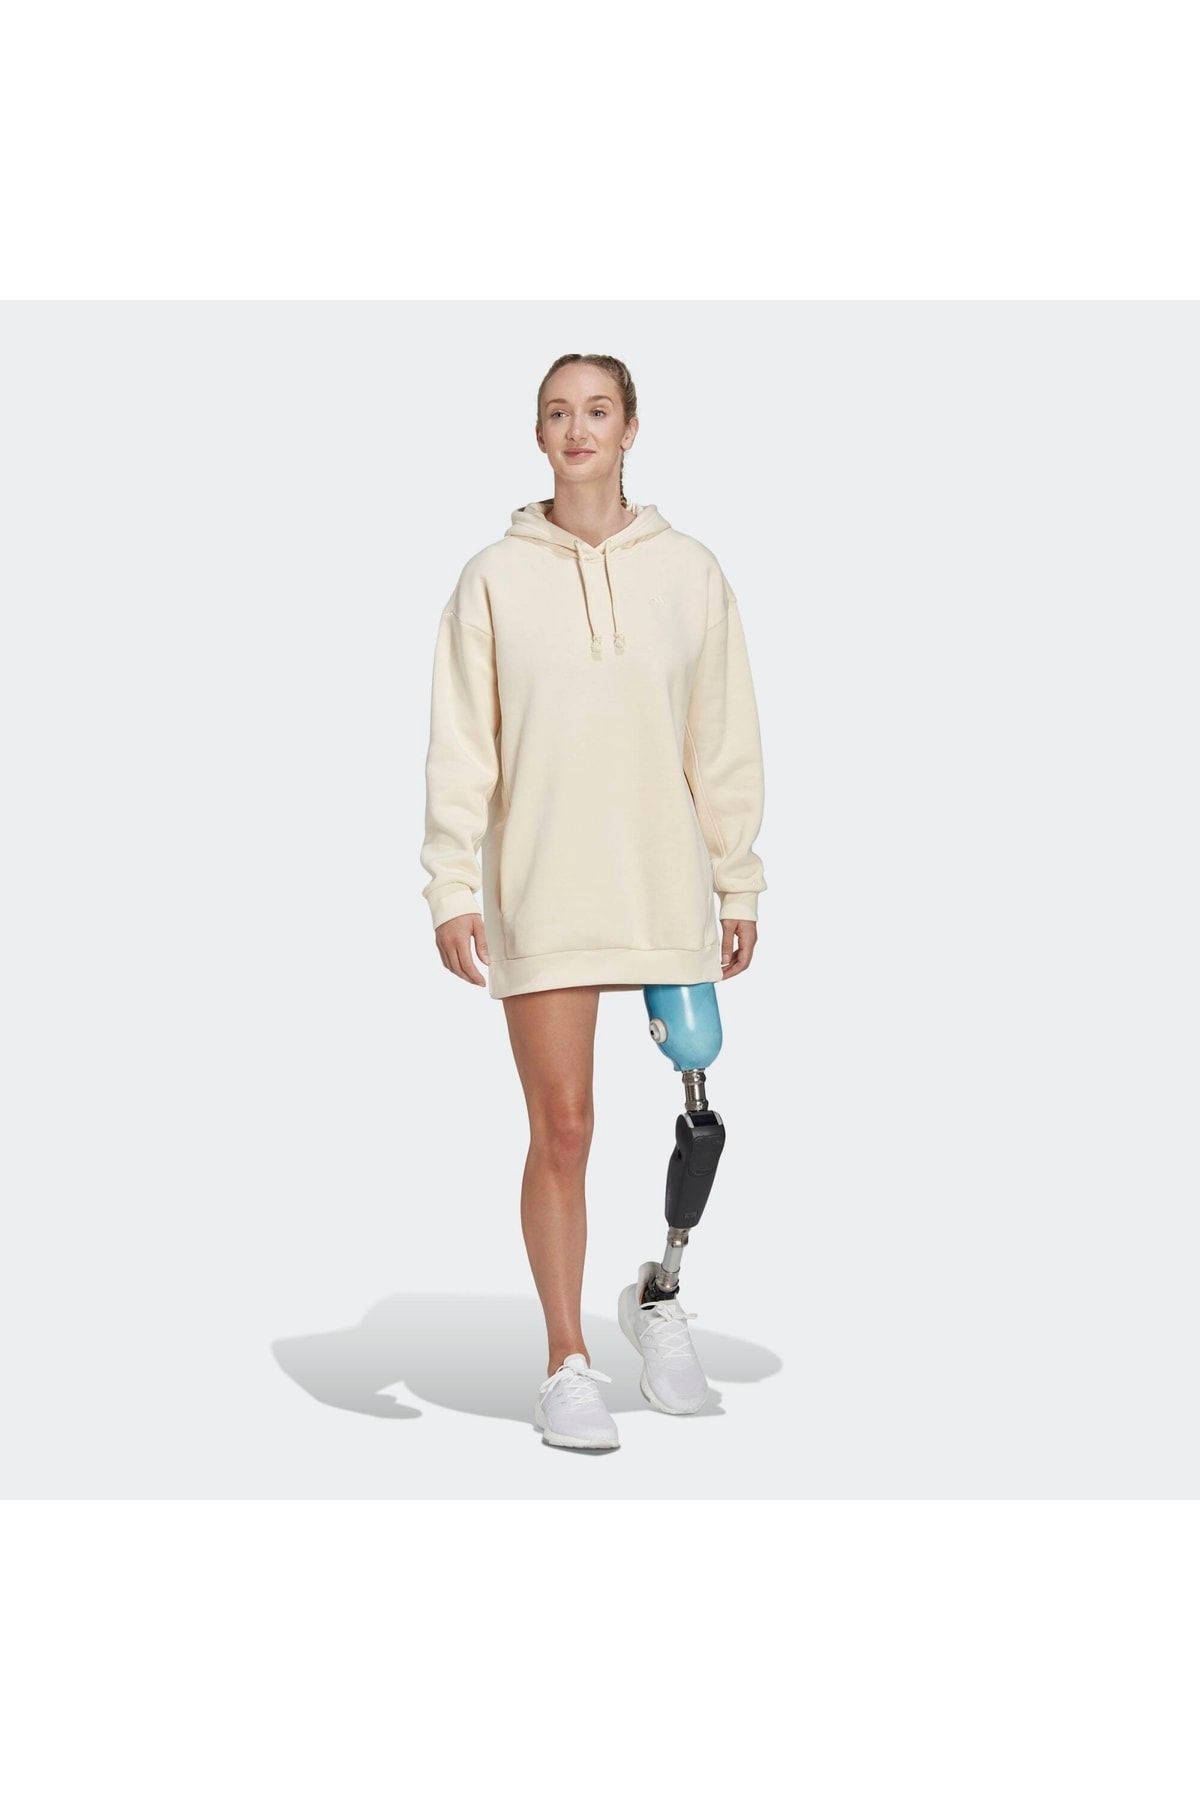 adidas All Szn Kadın Krem Sweatshirt (hn4227)